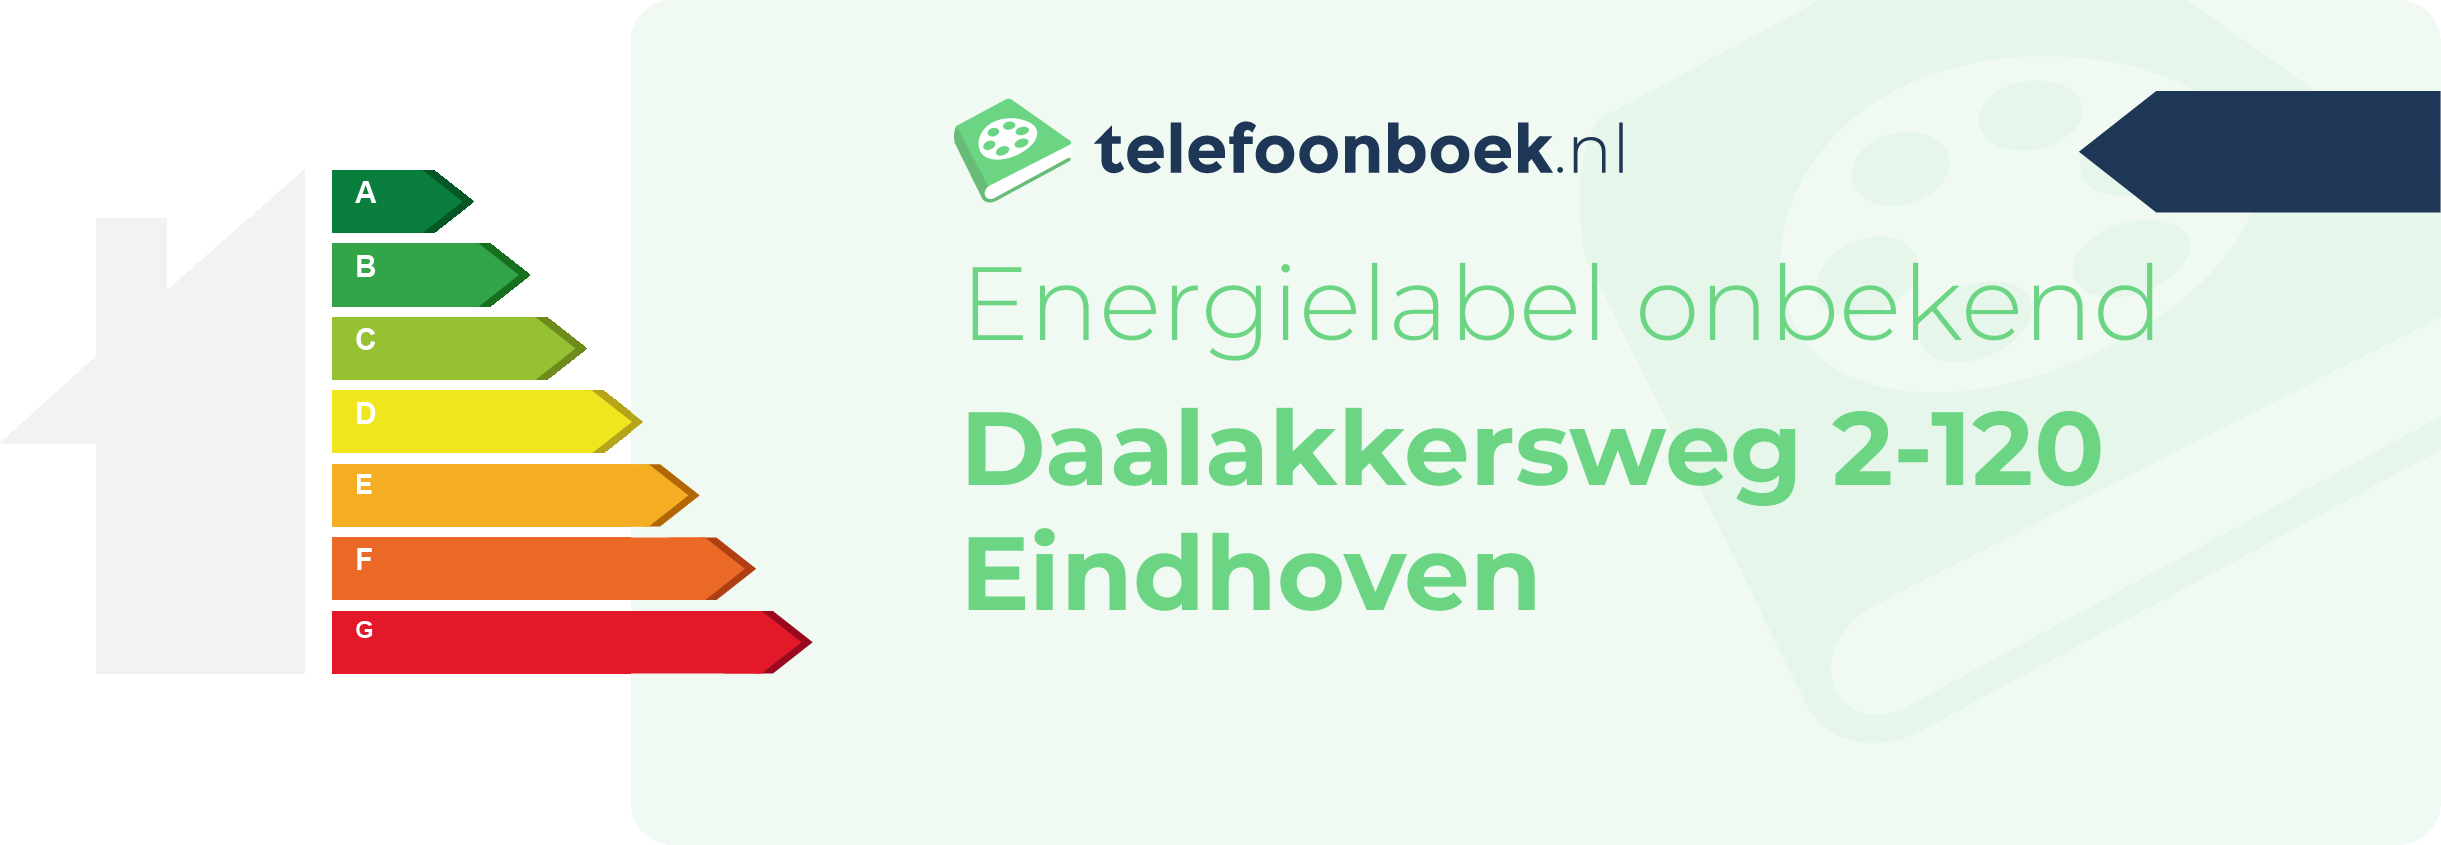 Energielabel Daalakkersweg 2-120 Eindhoven